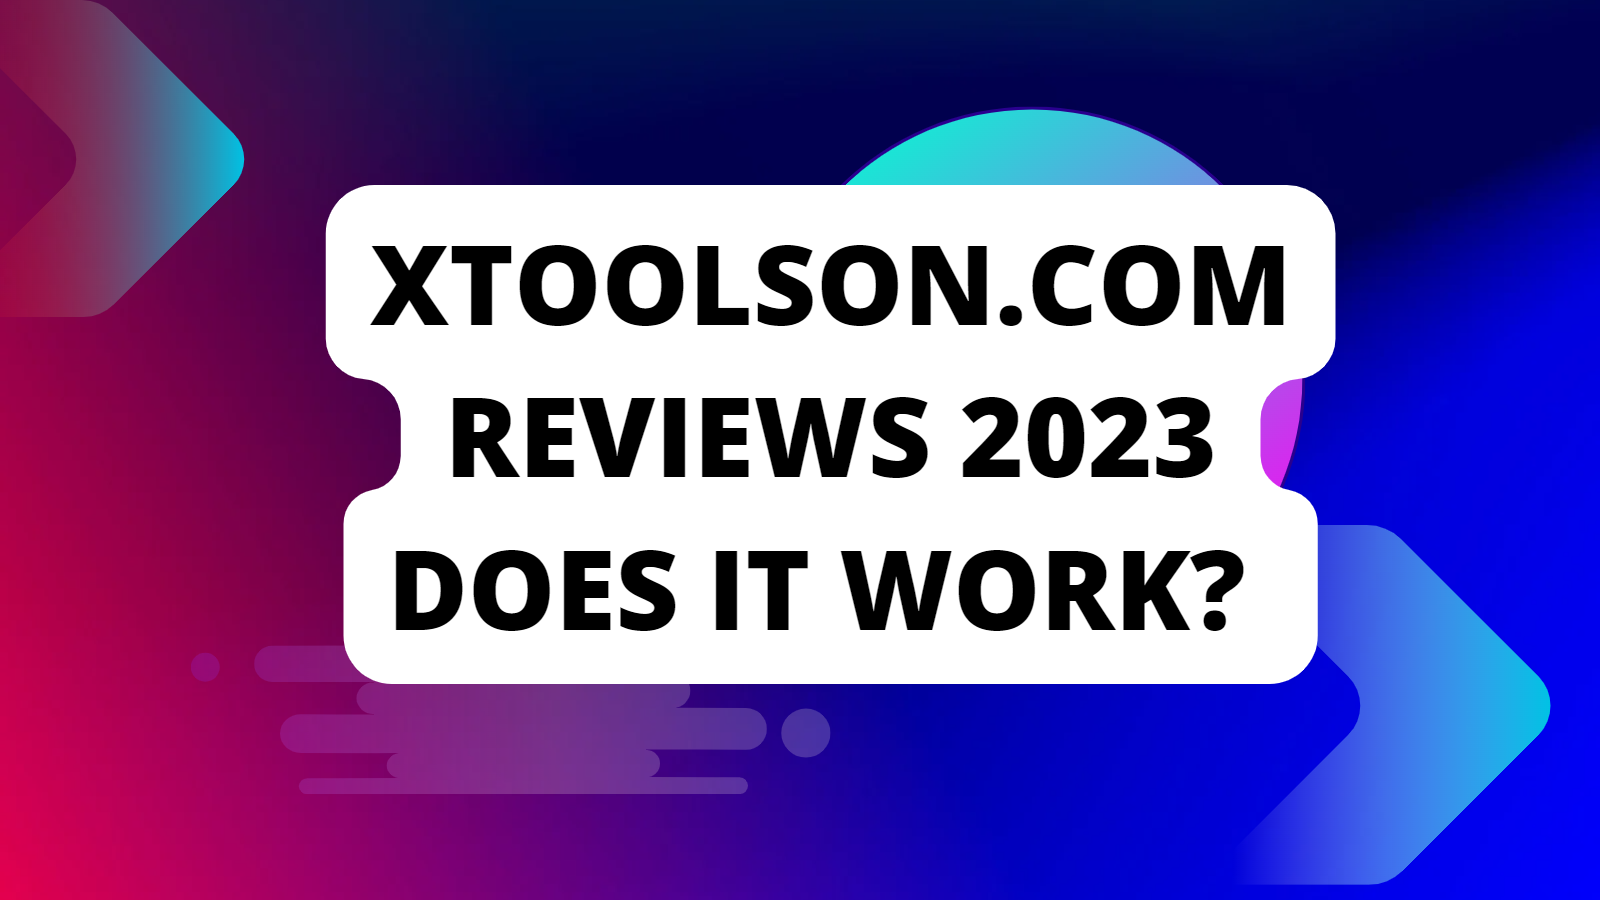 XToolson.com Reviews